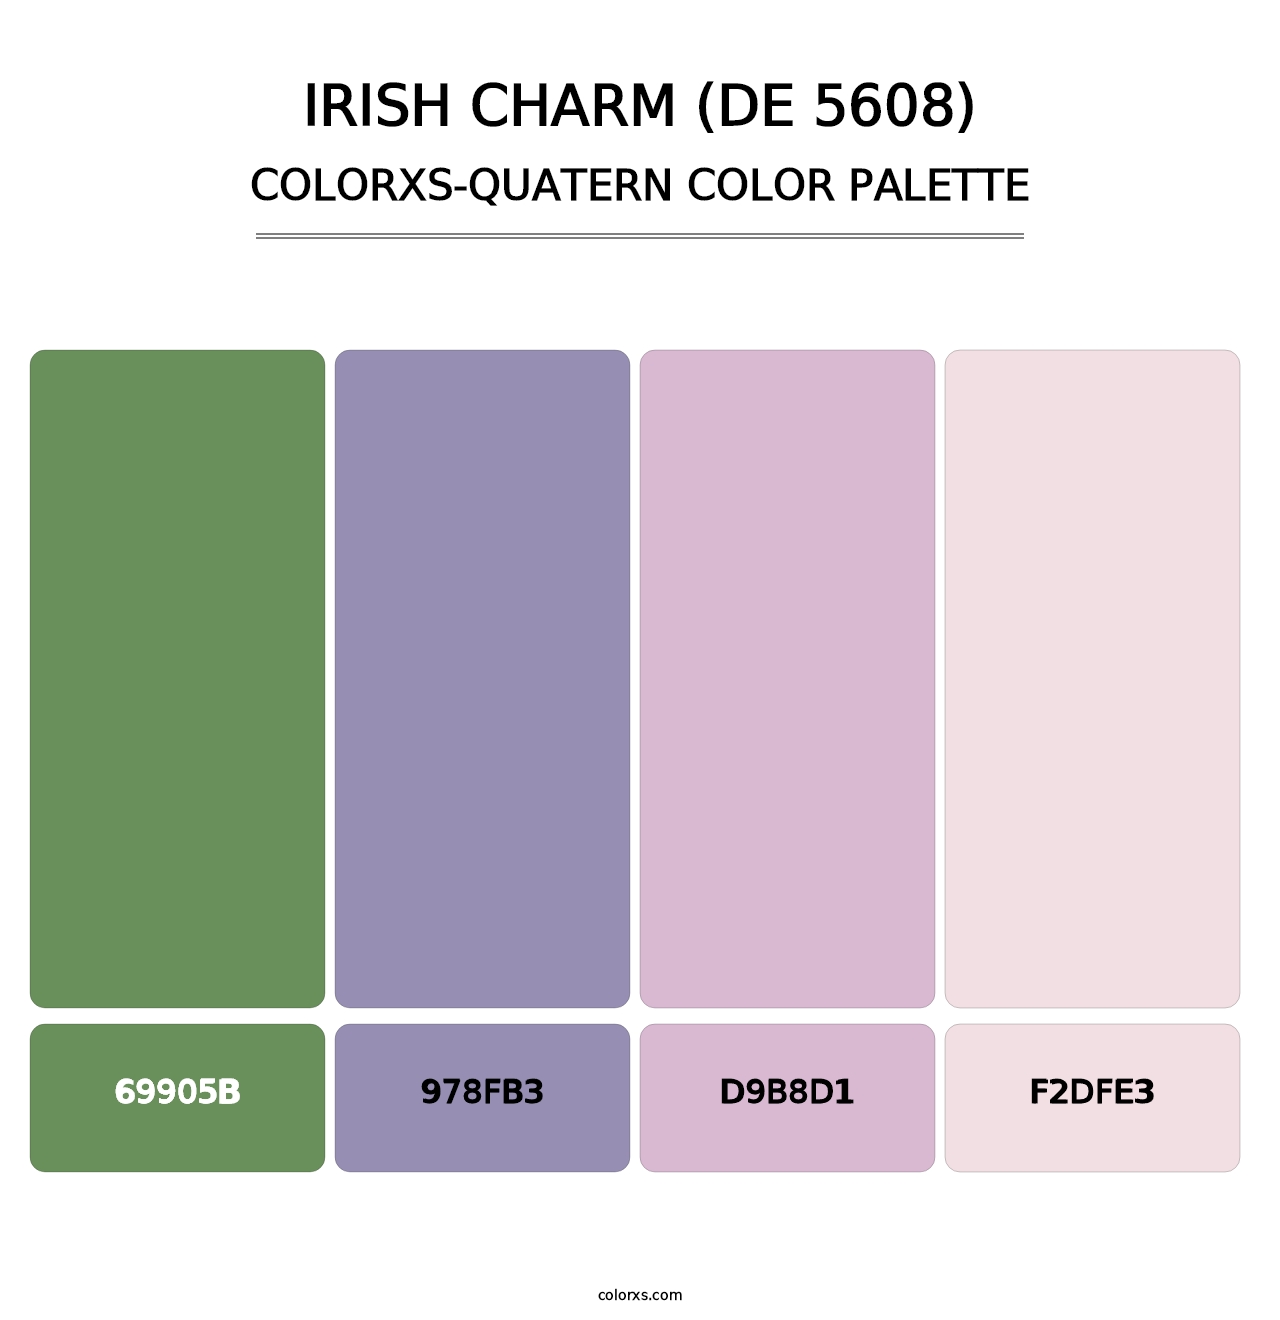 Irish Charm (DE 5608) - Colorxs Quatern Palette